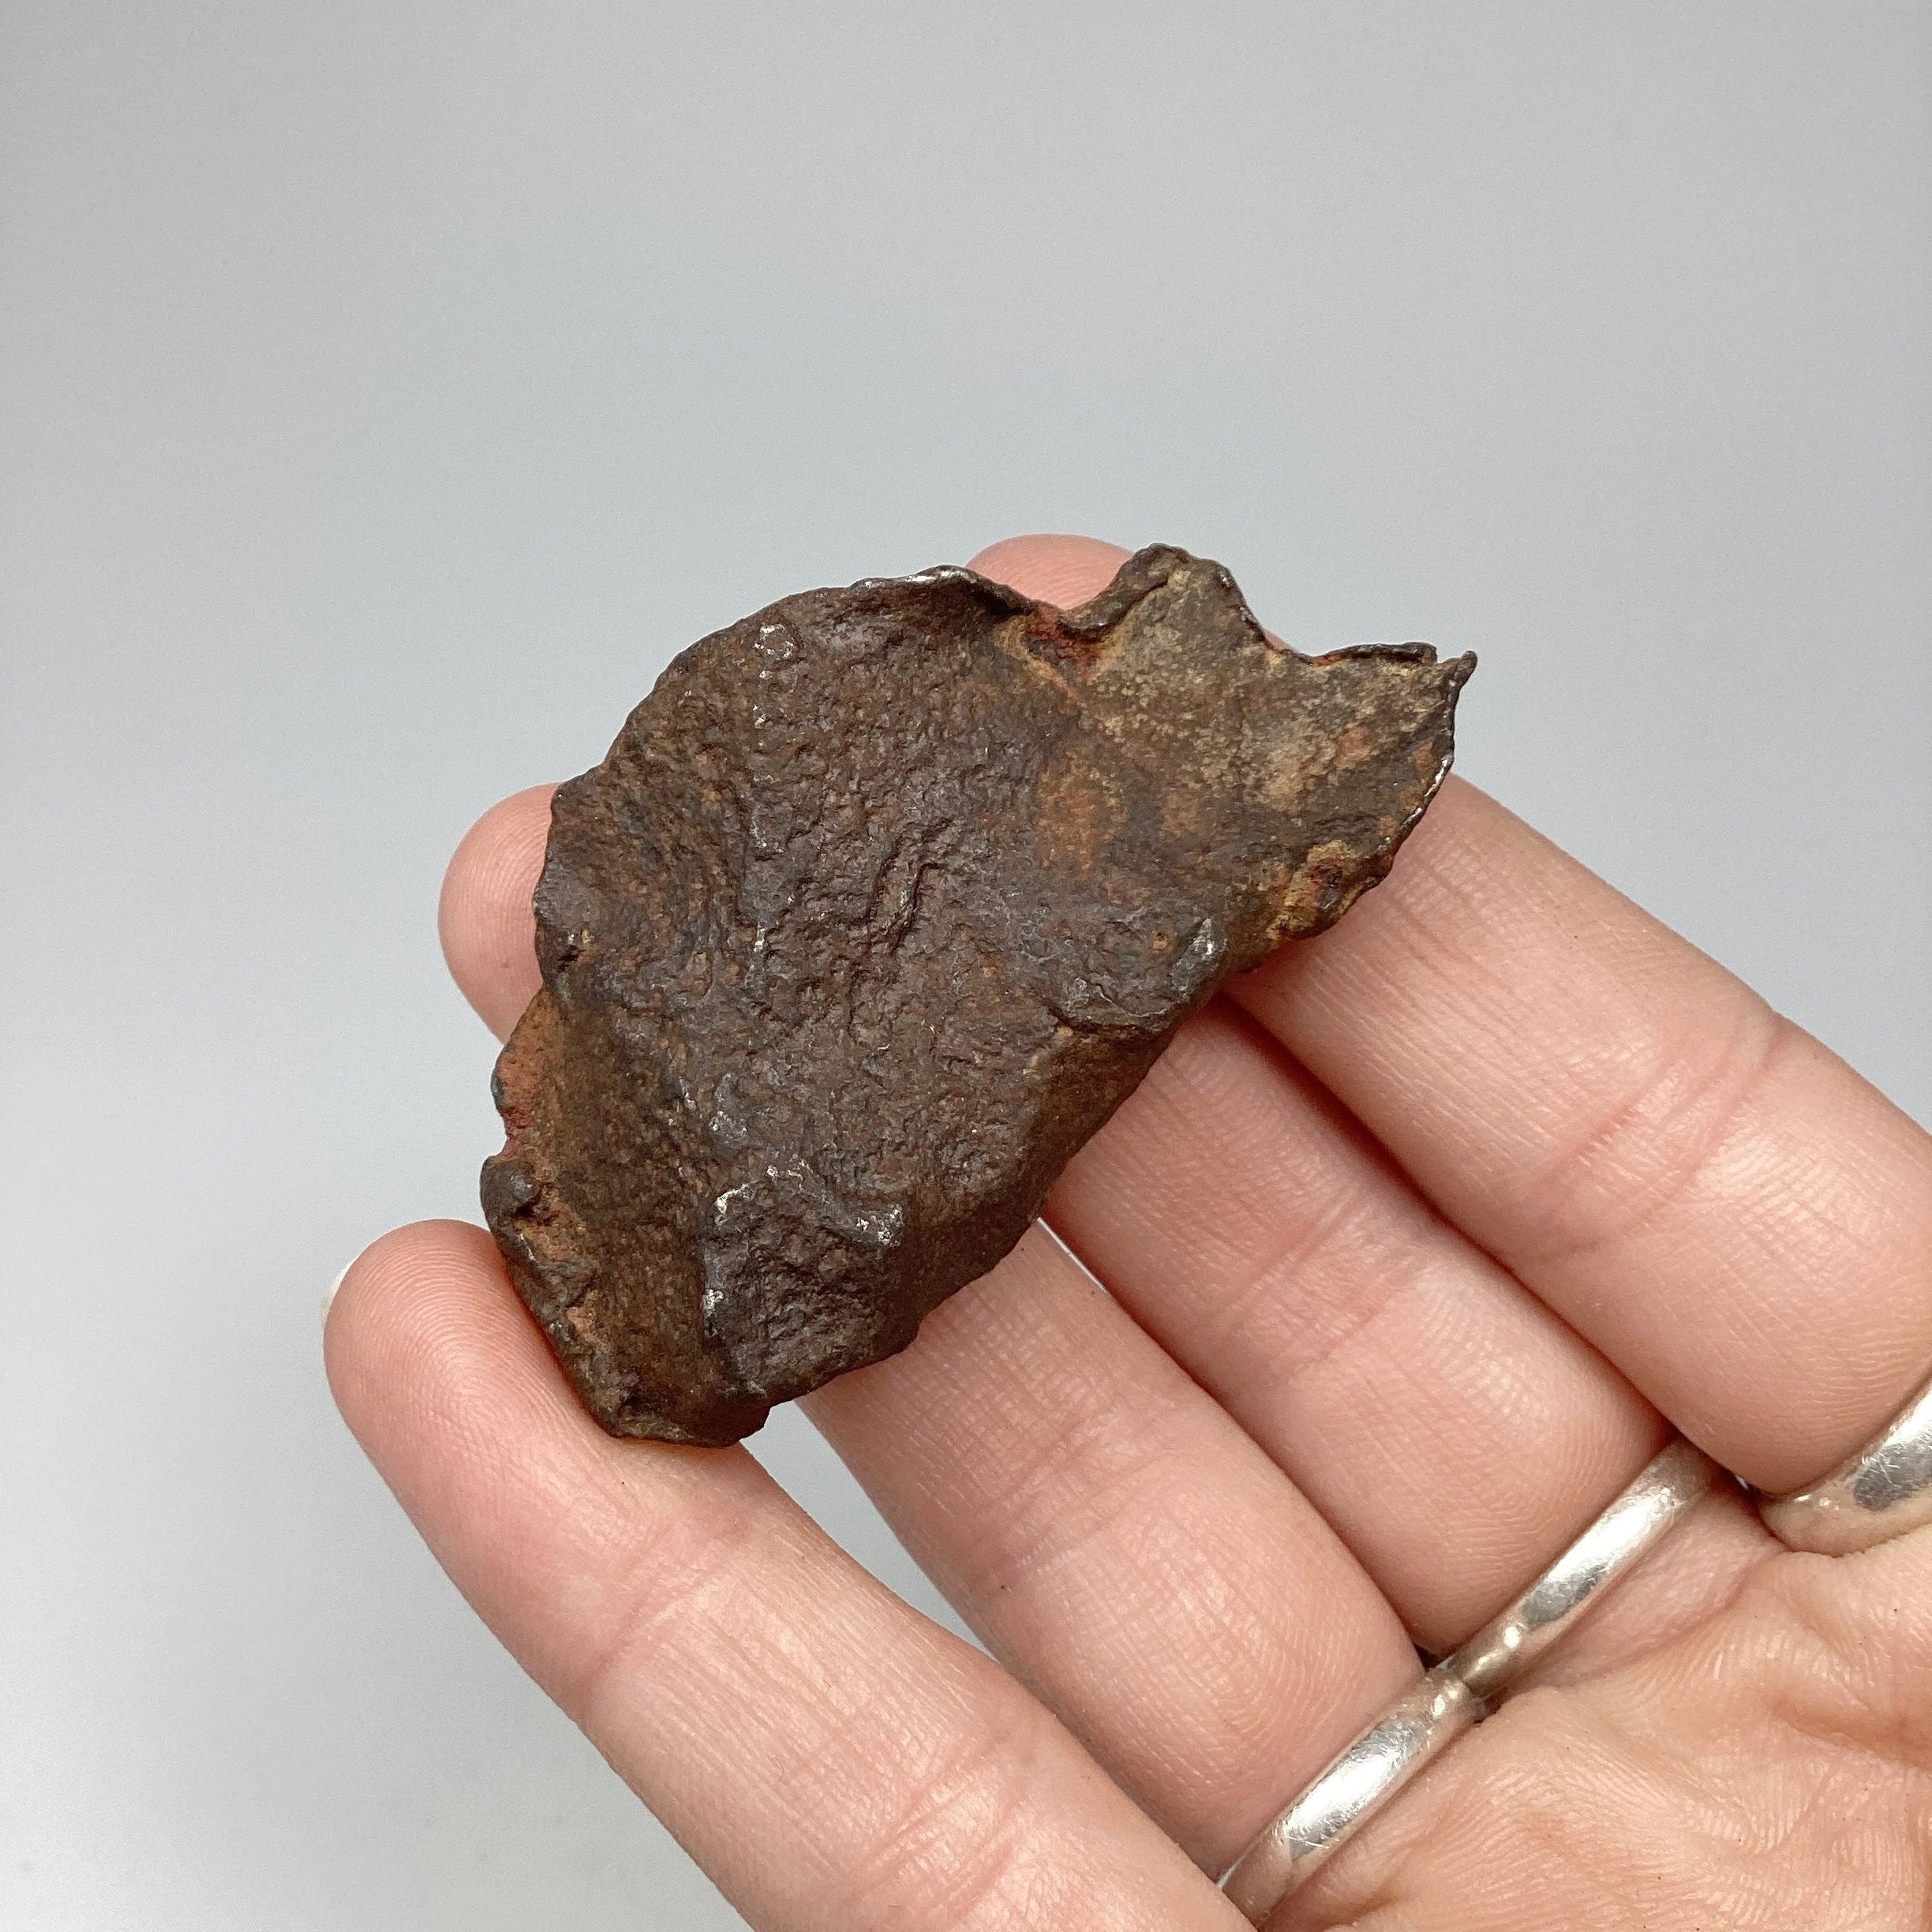 Gebel Kamil Meteorite – Rocks and Gems Canada